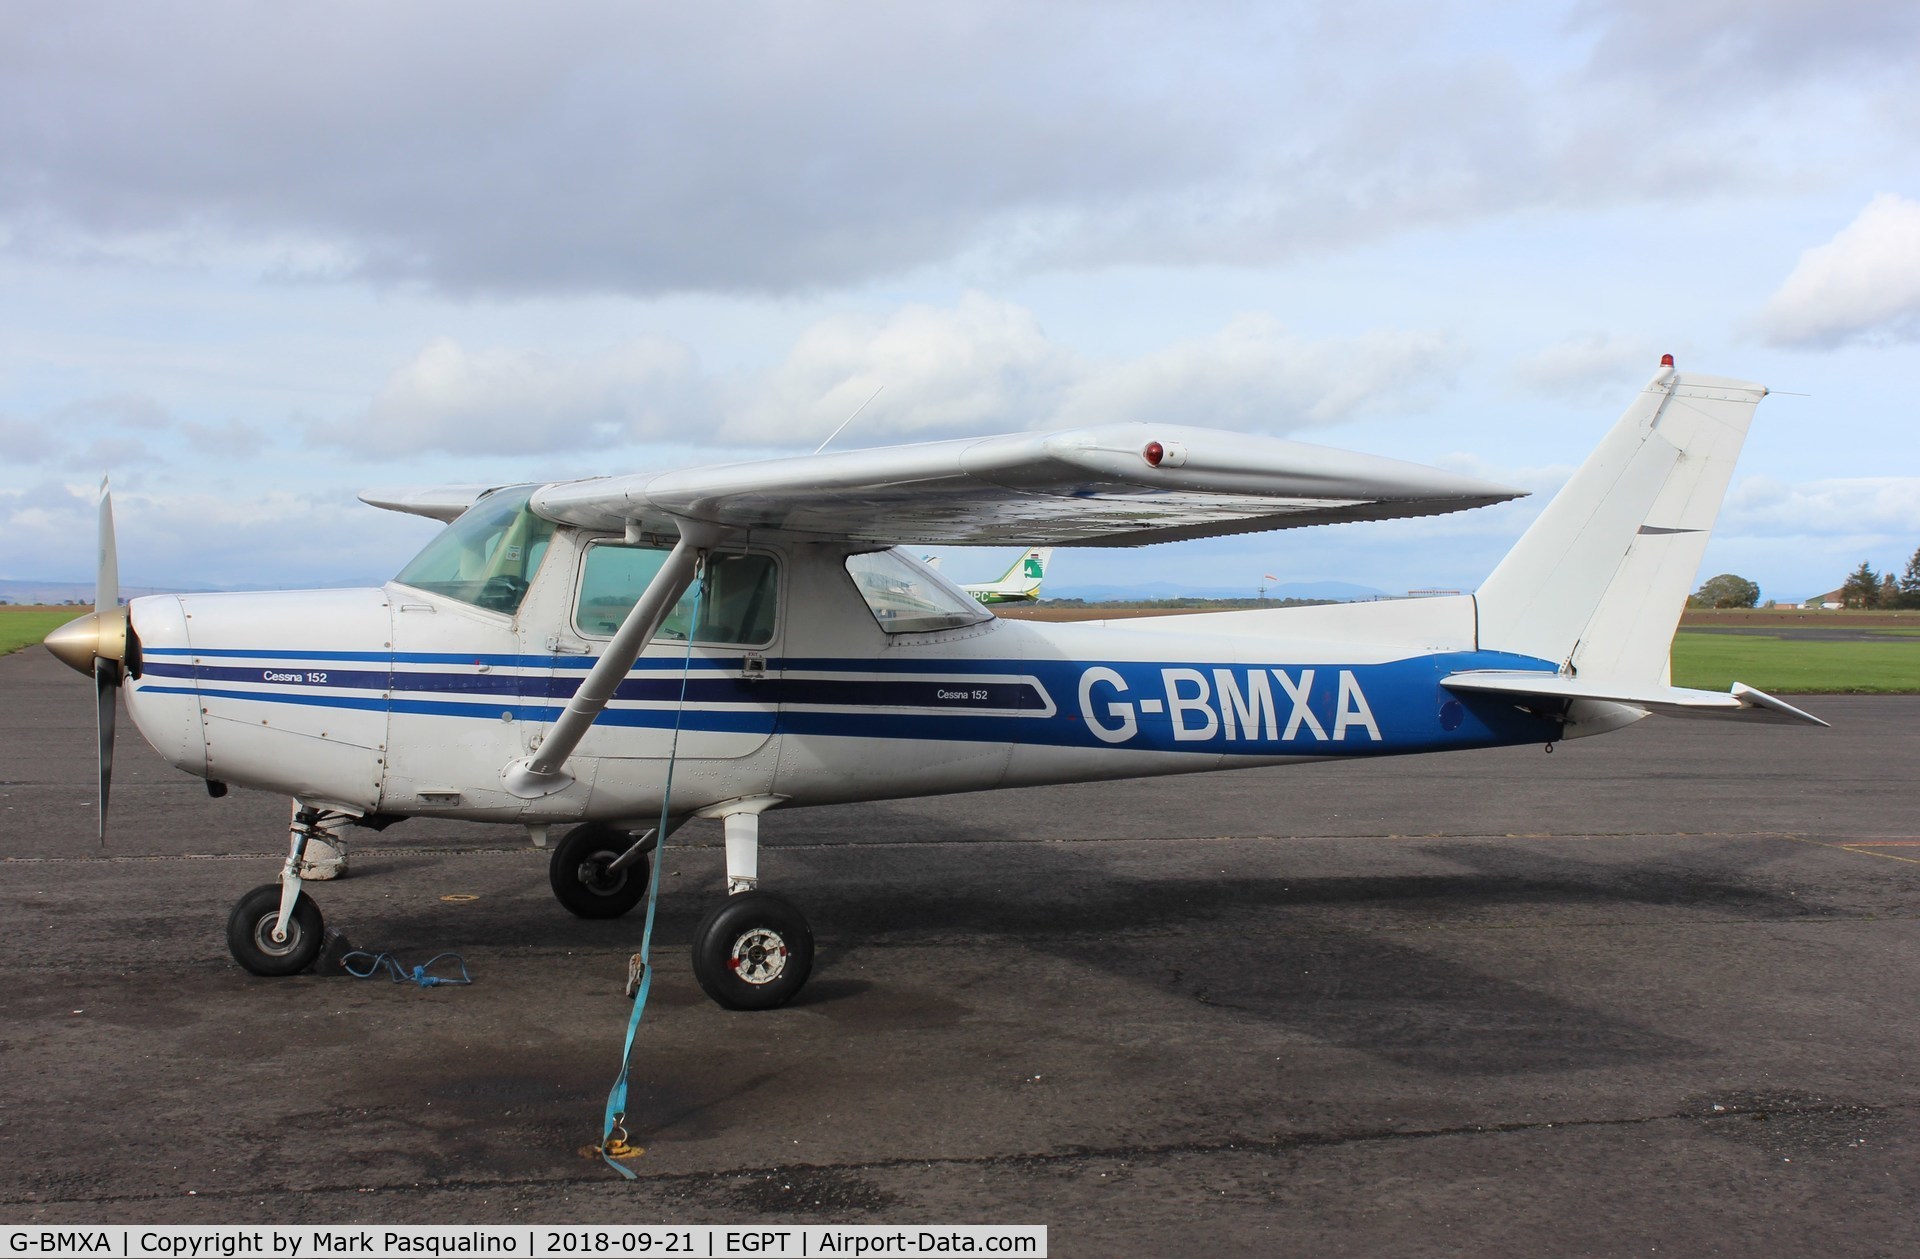 G-BMXA, 1977 Cessna 152 C/N 152-80125, Cessna 152